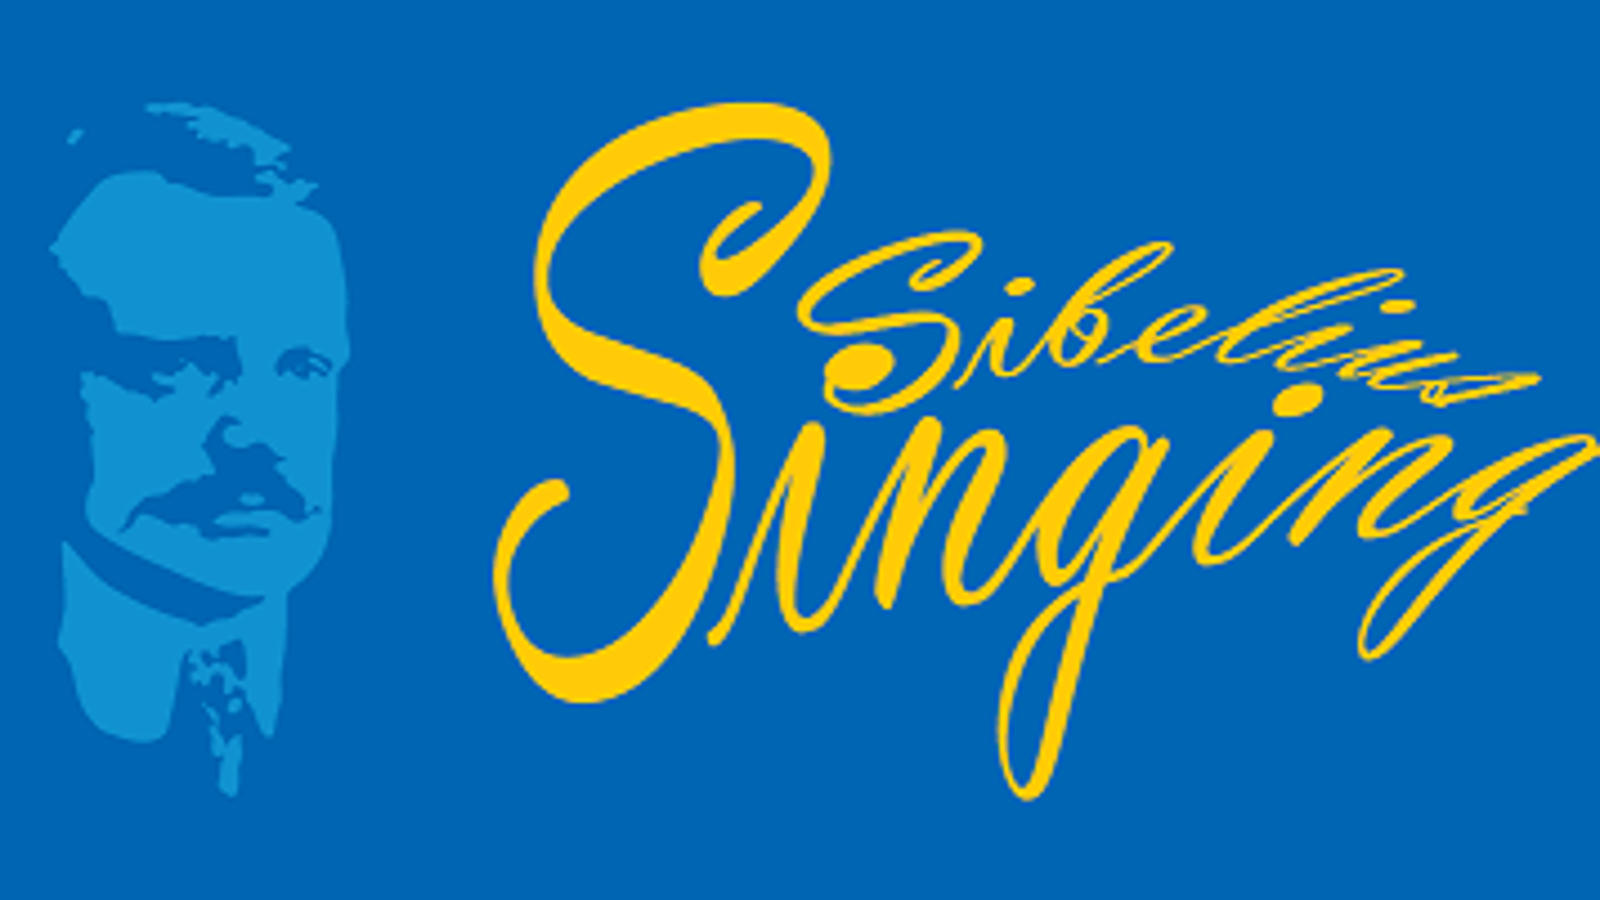 Kuvassa on heleän sinisellä pohjalla Sibeliuksen harmaan sininen figuurikuva ja kaunokirjoituksella isoin kirjaimin Sibelius Singing keltaisella.